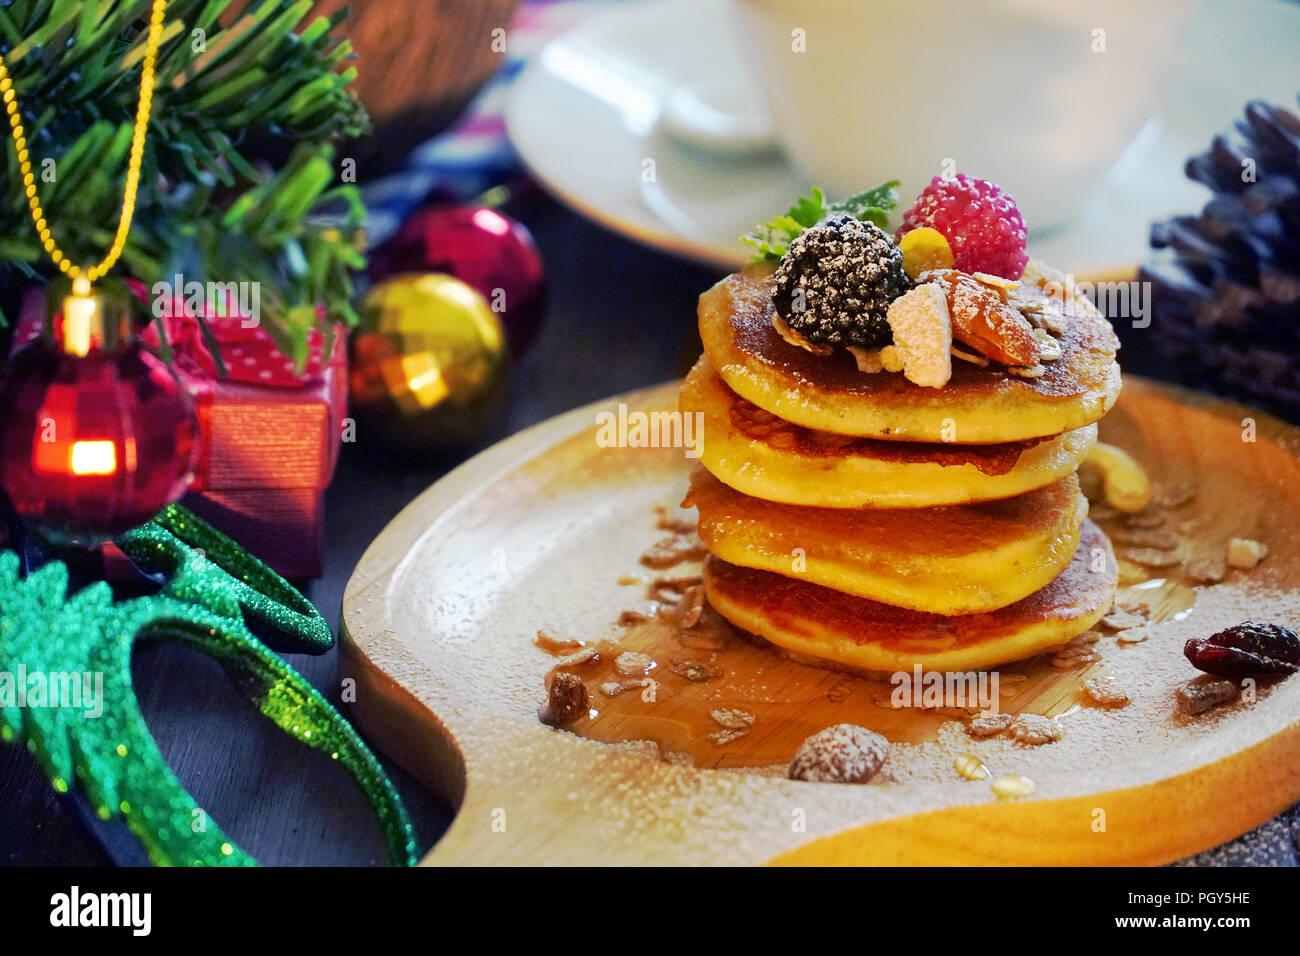 Garniture de crêpes aux fruits rouges et de l'écrou avec don d'arrière-plan et cône de pin en vertu de l'arbre de Noël, fête de Noël de dessert. Banque D'Images